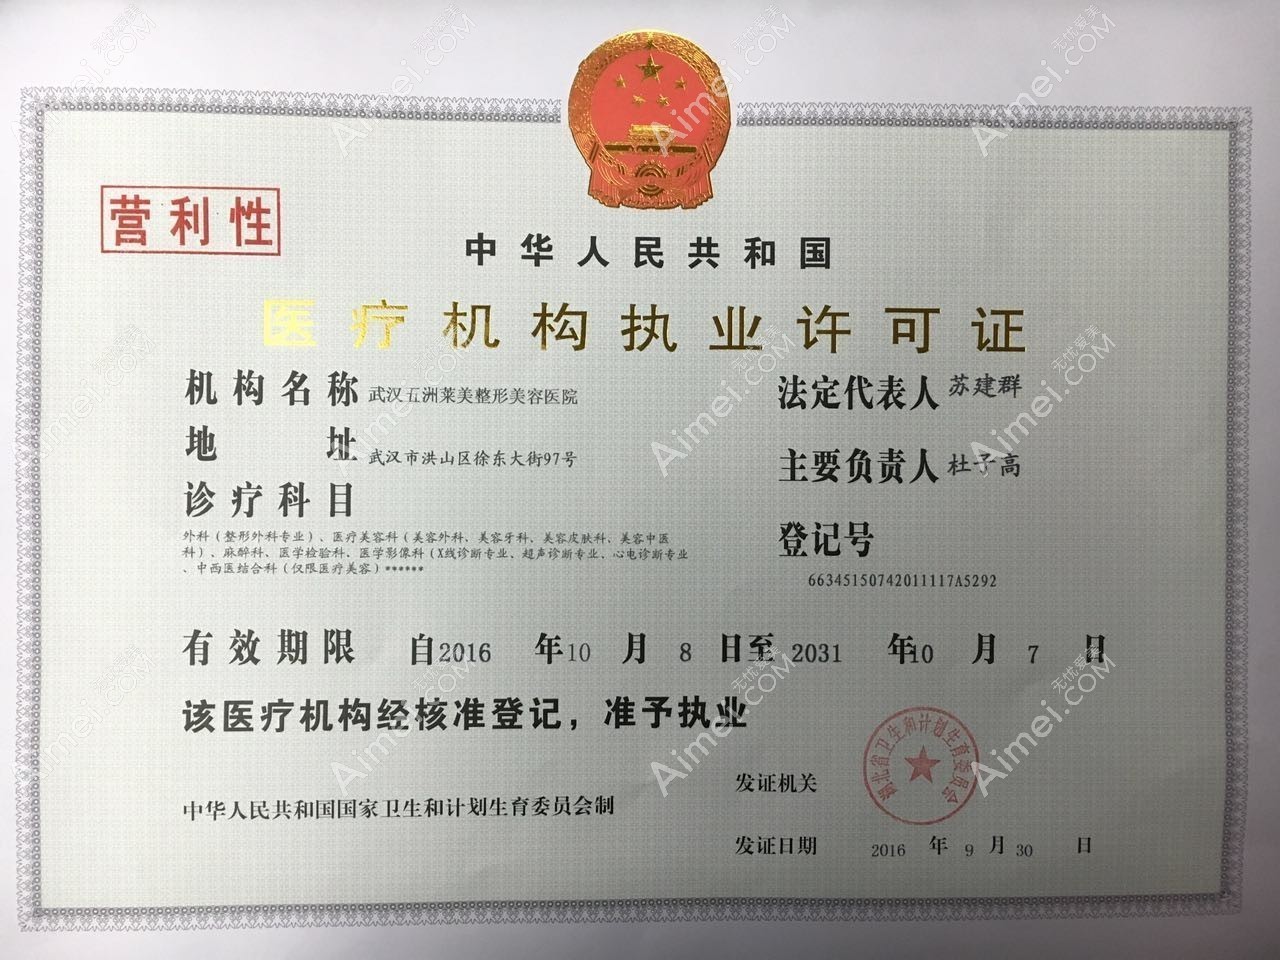 武汉五洲莱美整形美容医院医疗机构执业许可证